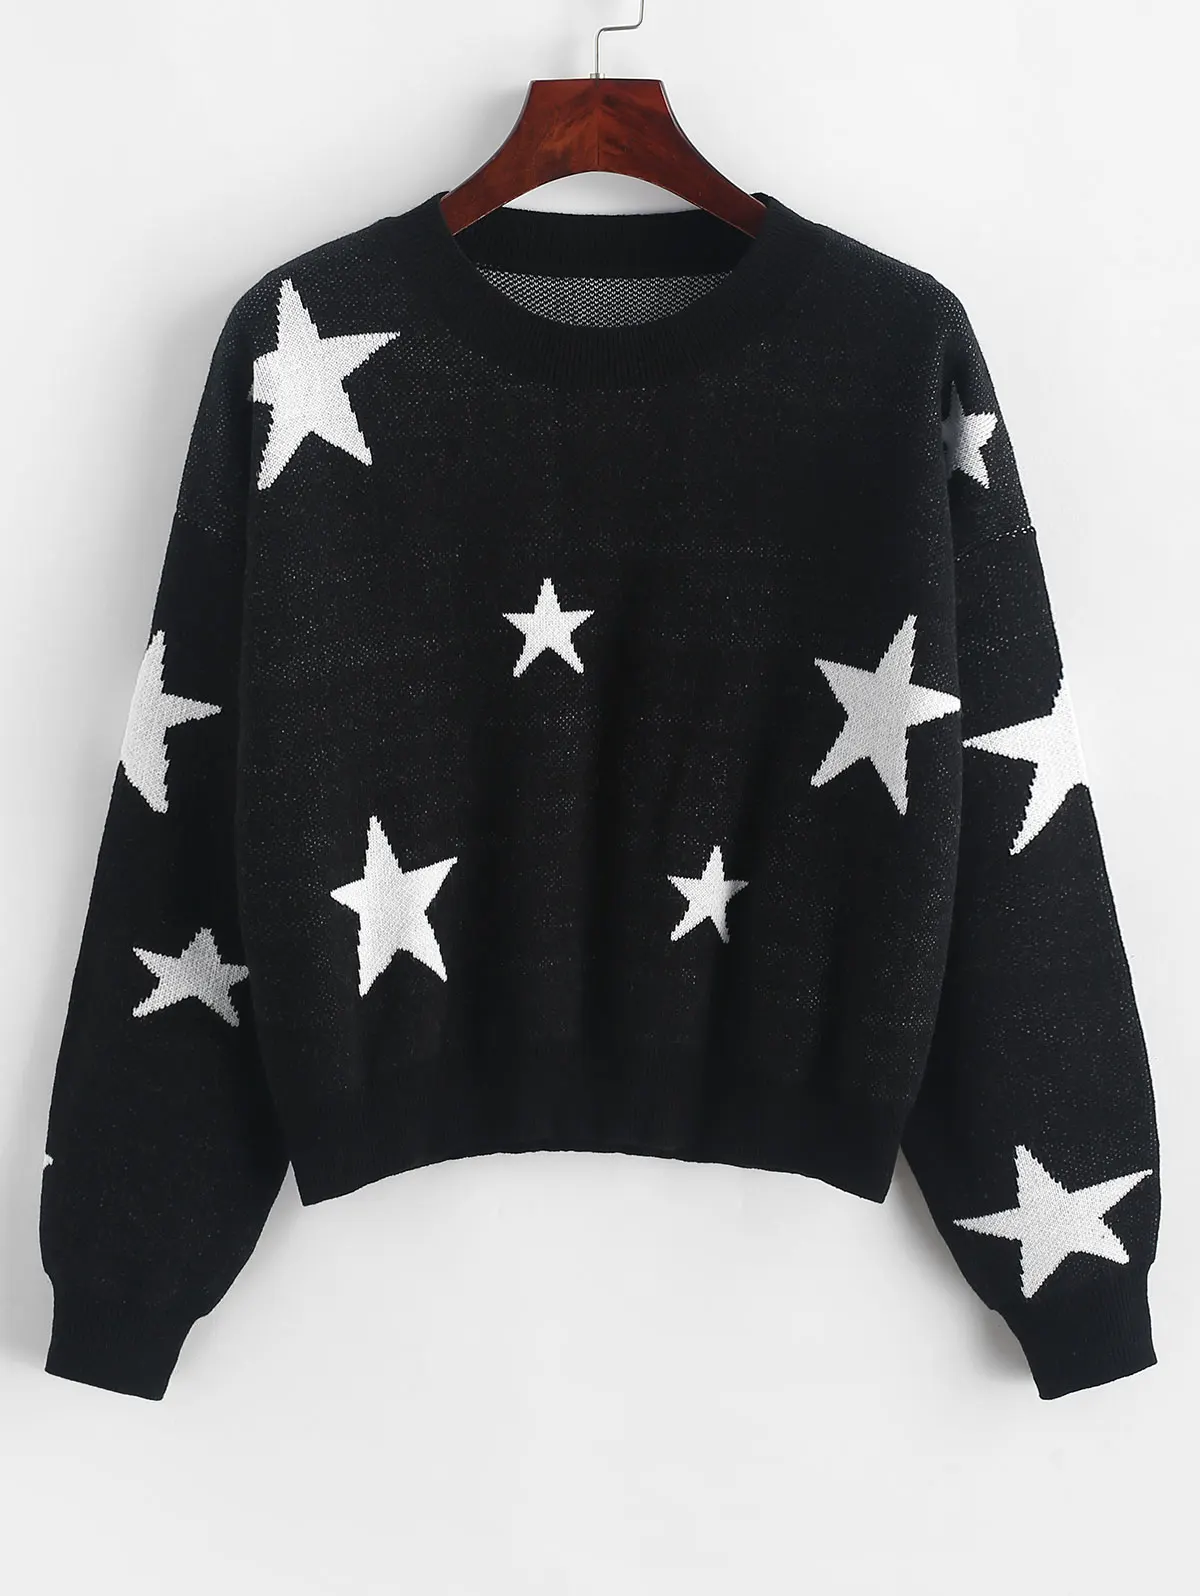 Укороченный свитер с круглым вырезом и графикой звезд, короткий Свободный пуловер с заниженным плечом, эластичные женские свитера из вискозы, теплые осенние